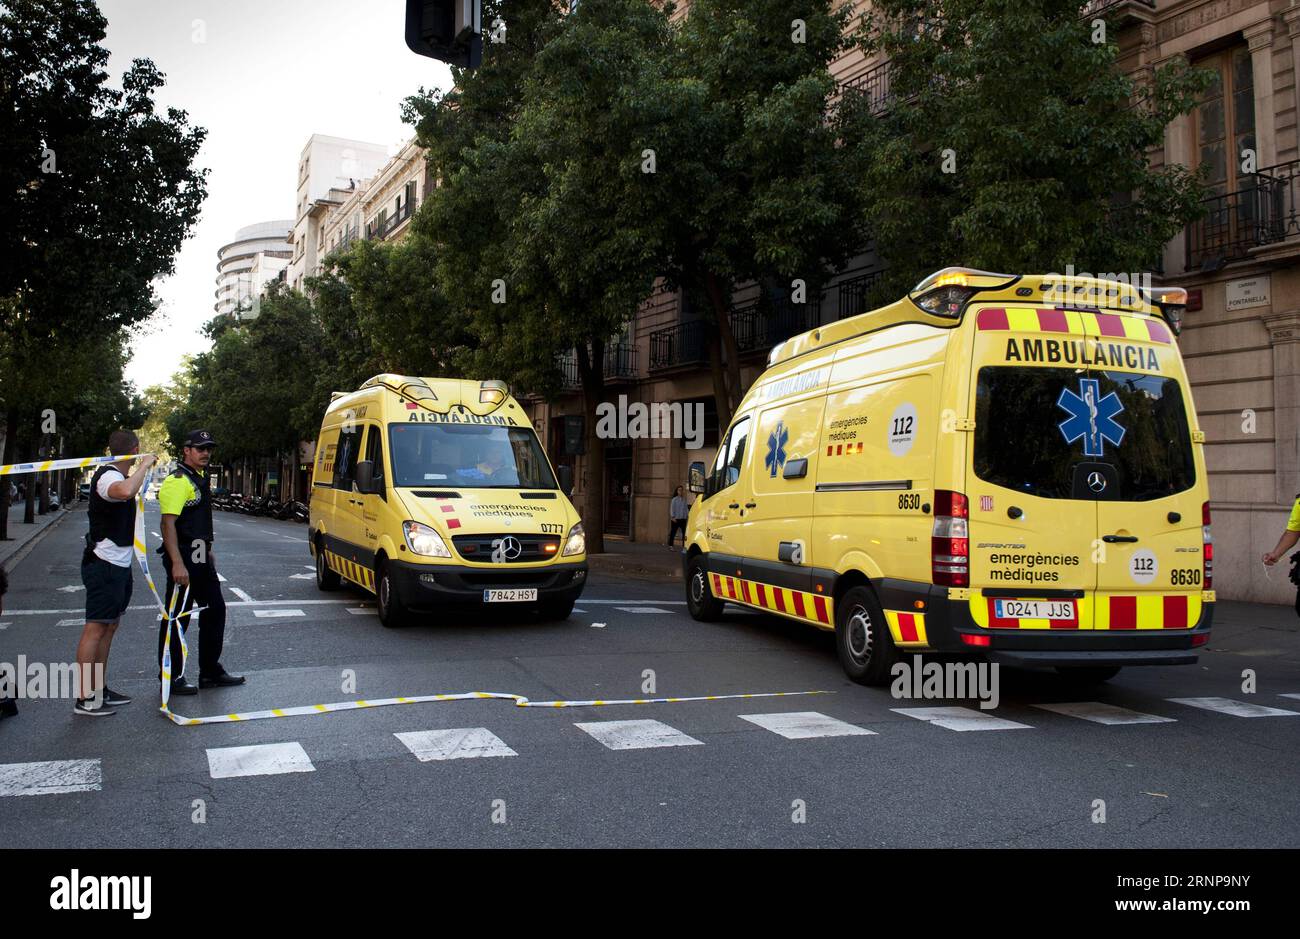 (170817) -- BARCELONE (ESPAGNE), 17 août 2017 -- des ambulances sont vues près de la Plaza Catalonia à la suite d'un attentat terroriste dans le centre de Barcelone, Espagne, le 17 août 2017. Treize personnes ont été tuées, 80 autres blessées et hospitalisées avec 15 d'entre elles dans un état grave dans l'attaque terroriste de Barcelone jeudi après-midi, a déclaré un responsable espagnol. ESPAGNE-BARCELONE-ATTAQUE TERRORISTE LinoxDexVallier PUBLICATIONxNOTxINxCHN Barcelone Espagne août 17 2017 ambulances sont lacs près de la Plaza Catalonia suite à un attentat terroriste dans le centre de Barcelone Espagne LE 17 2017 août treize célébrités ont été TUÉES 80 autres Banque D'Images